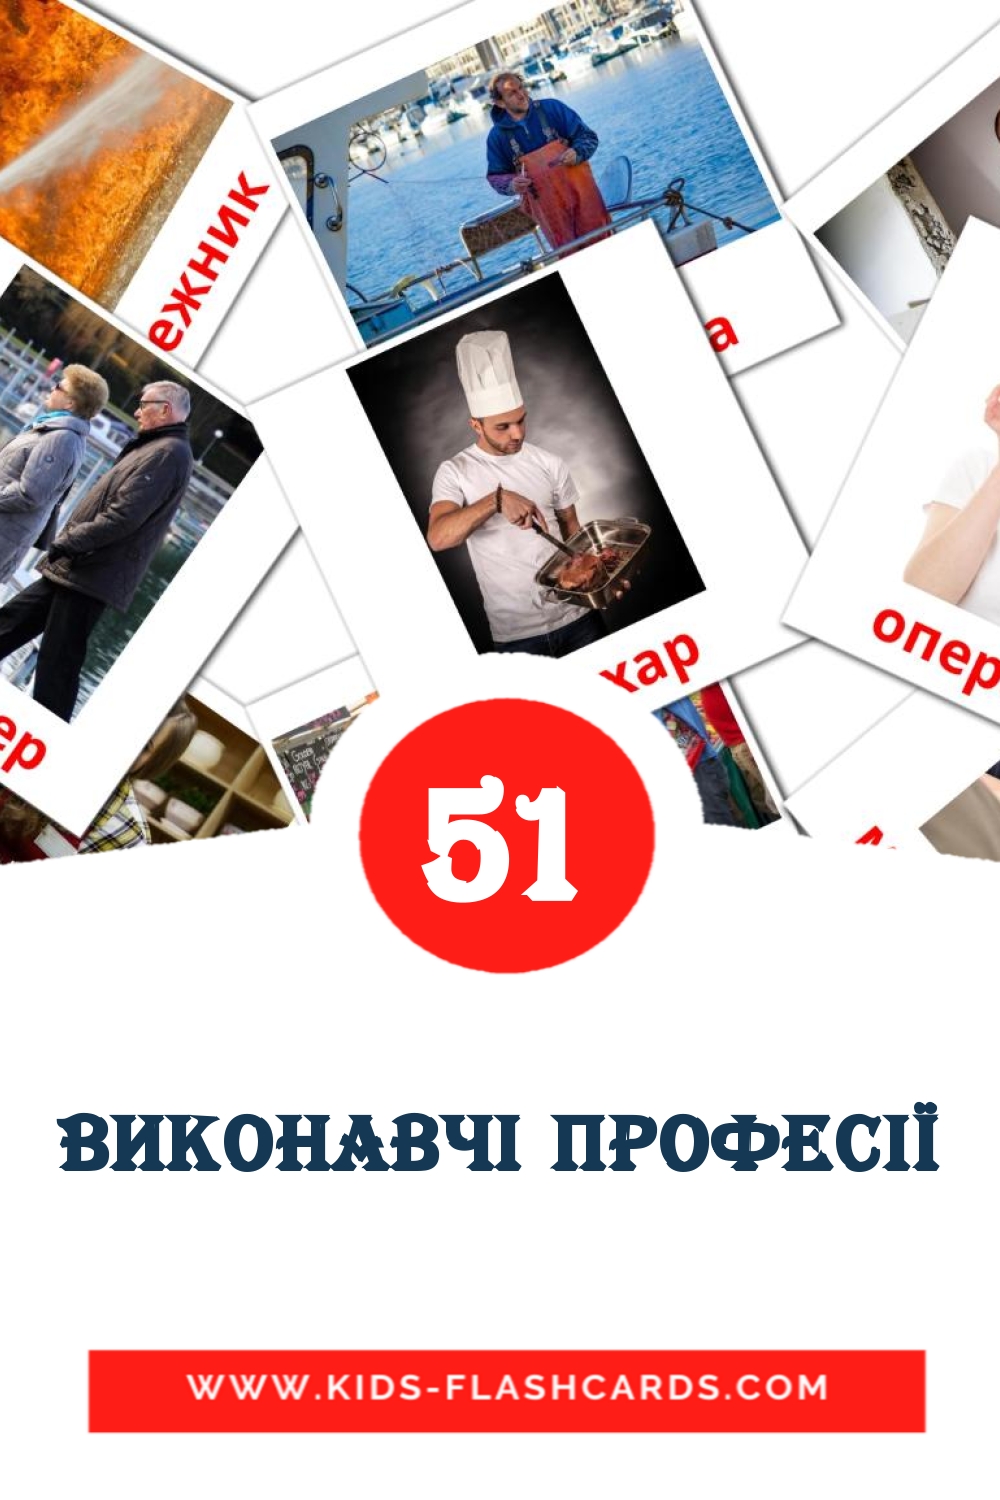 51 carte illustrate di Виконавчі професії per la scuola materna in ucraino